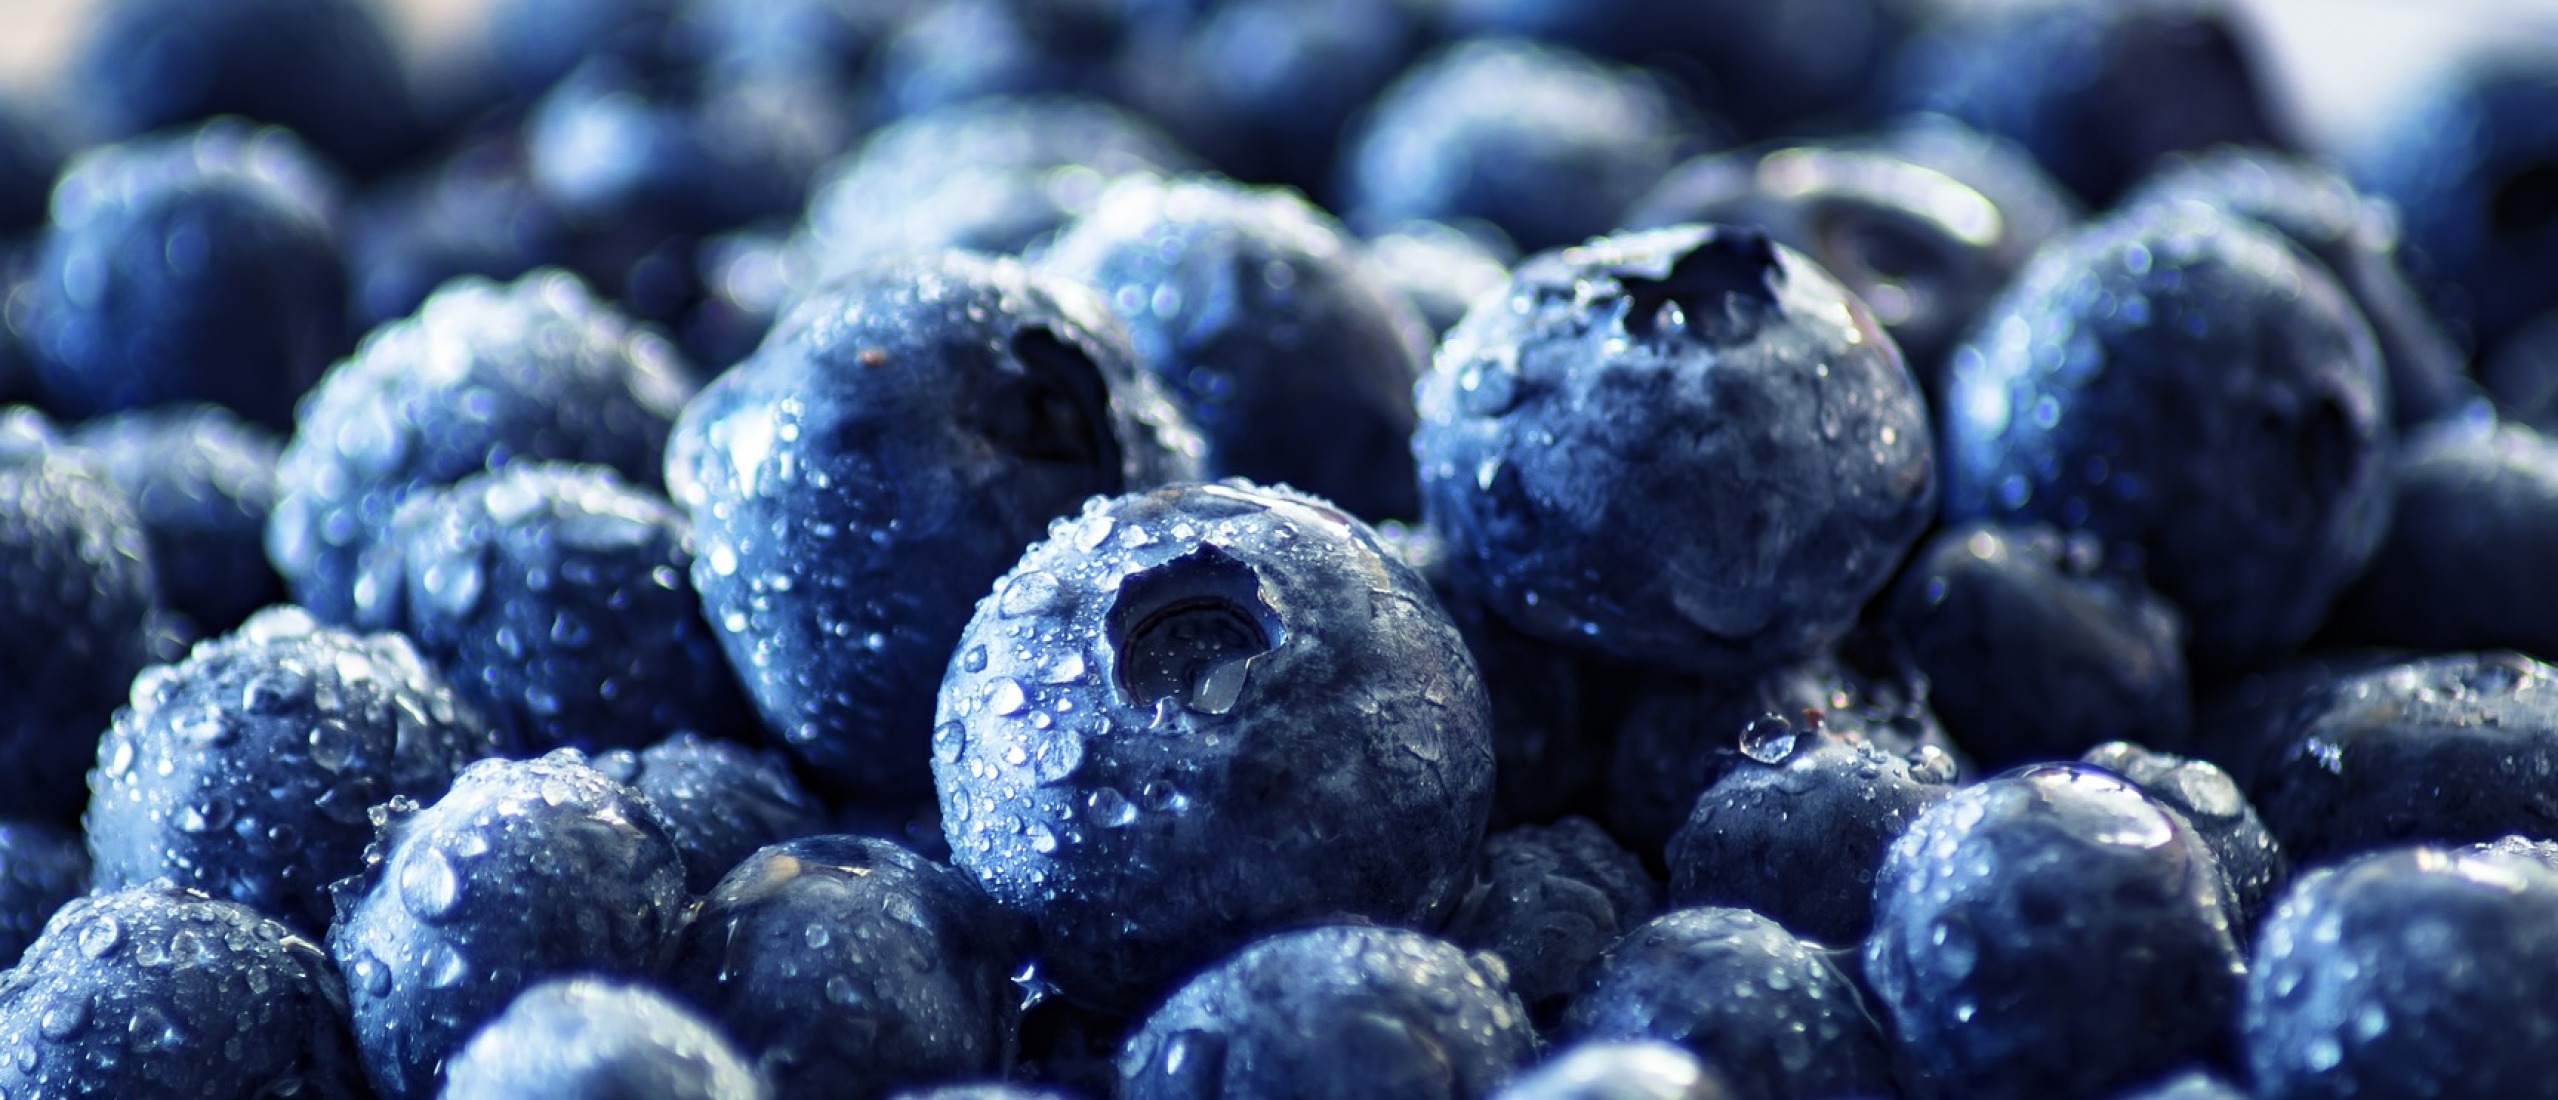 De krachtige antioxidanten van blauwe bessen